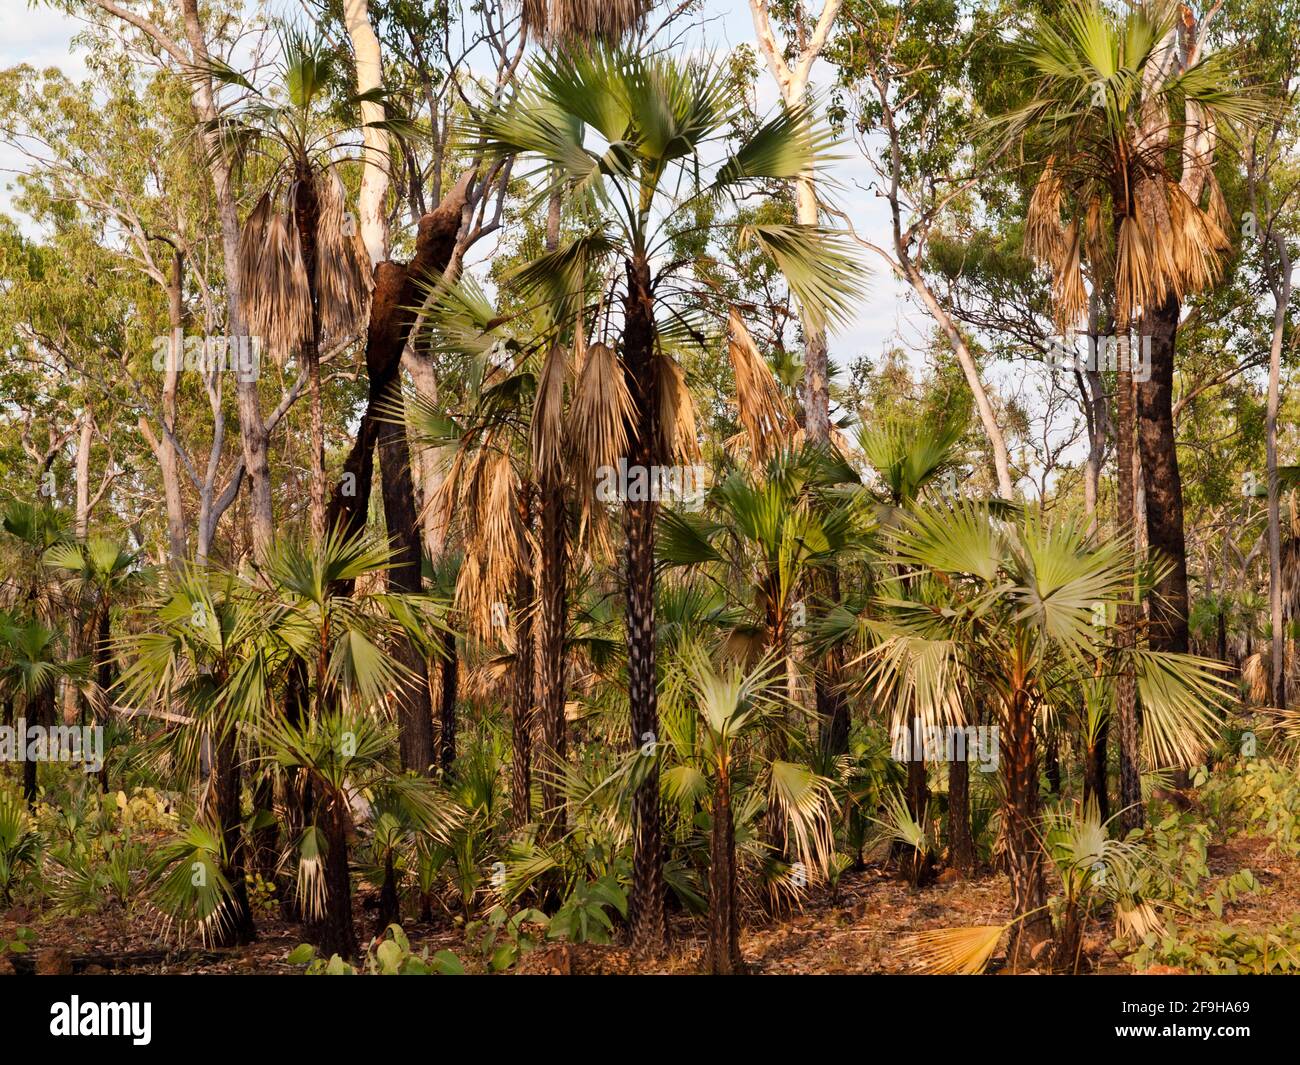 Palmeras de basura en carretera (Livistona eastonii) regenerando después del fuego, Parque Nacional del Río Mitchell (Ngauwudu), Kimberley, Australia Occidental Foto de stock